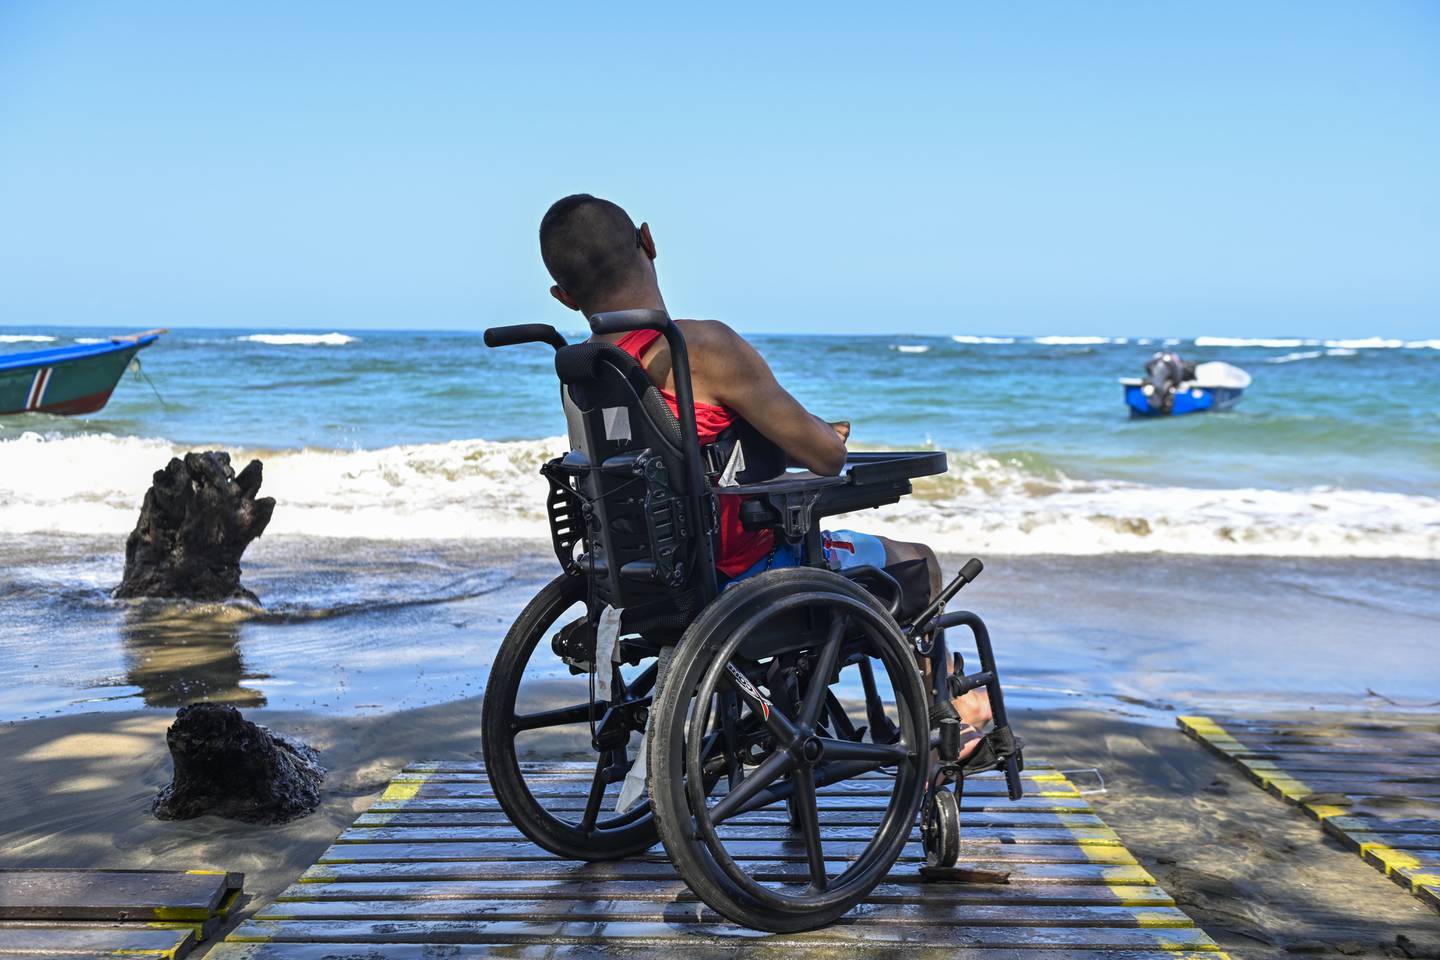 Alexander Brenes inauguró la rampa accesible y la silla anfibia, ambas hechas con plástico reciclado, en la playa Manzanillo.